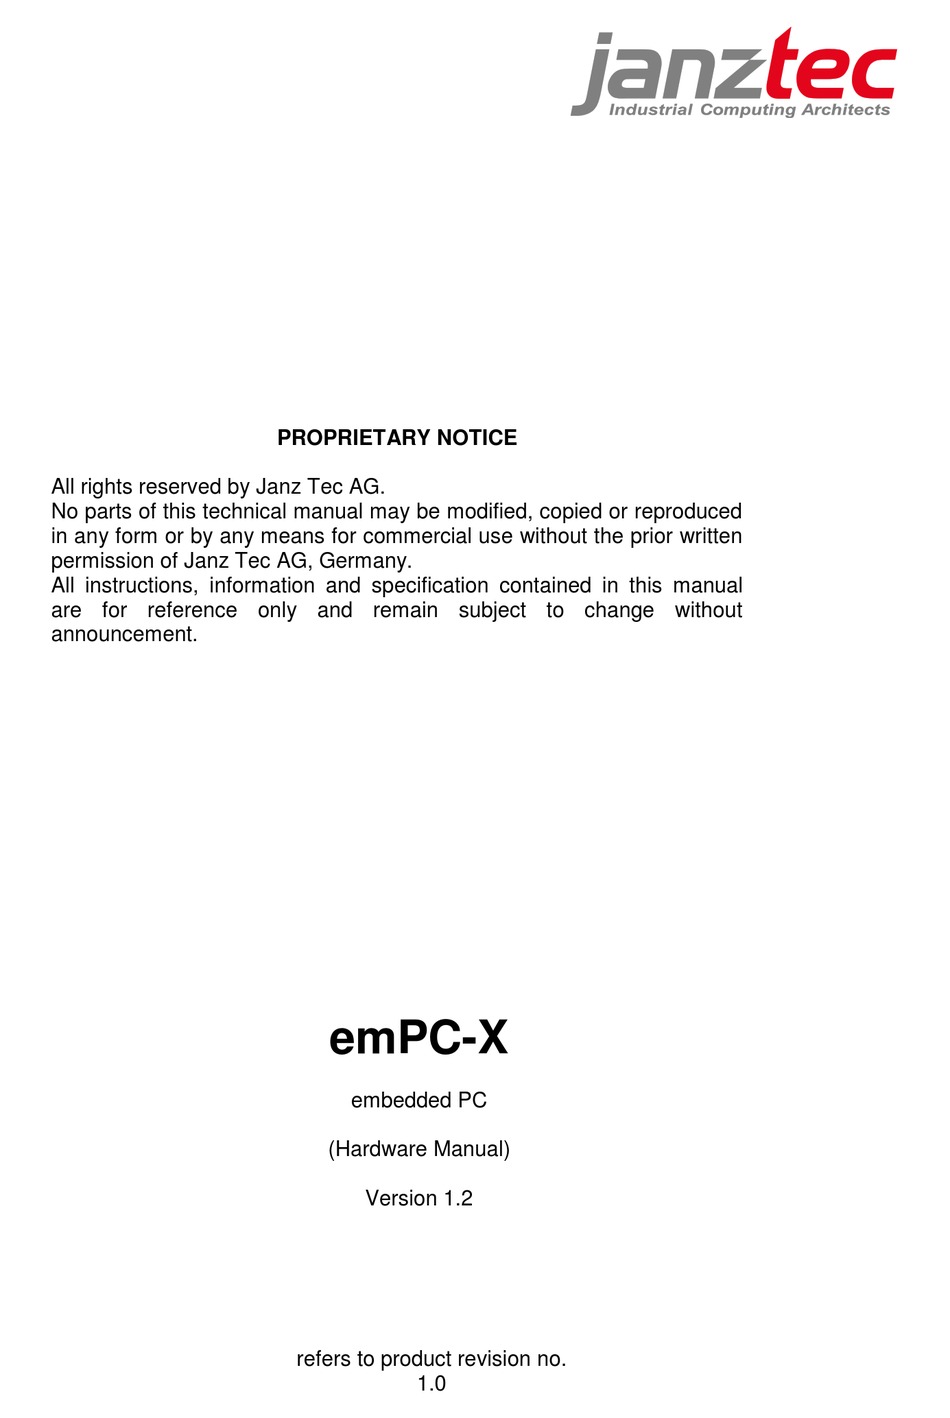 JANZ TEC EMPC-X SERIES HARDWARE MANUAL Pdf Download | ManualsLib